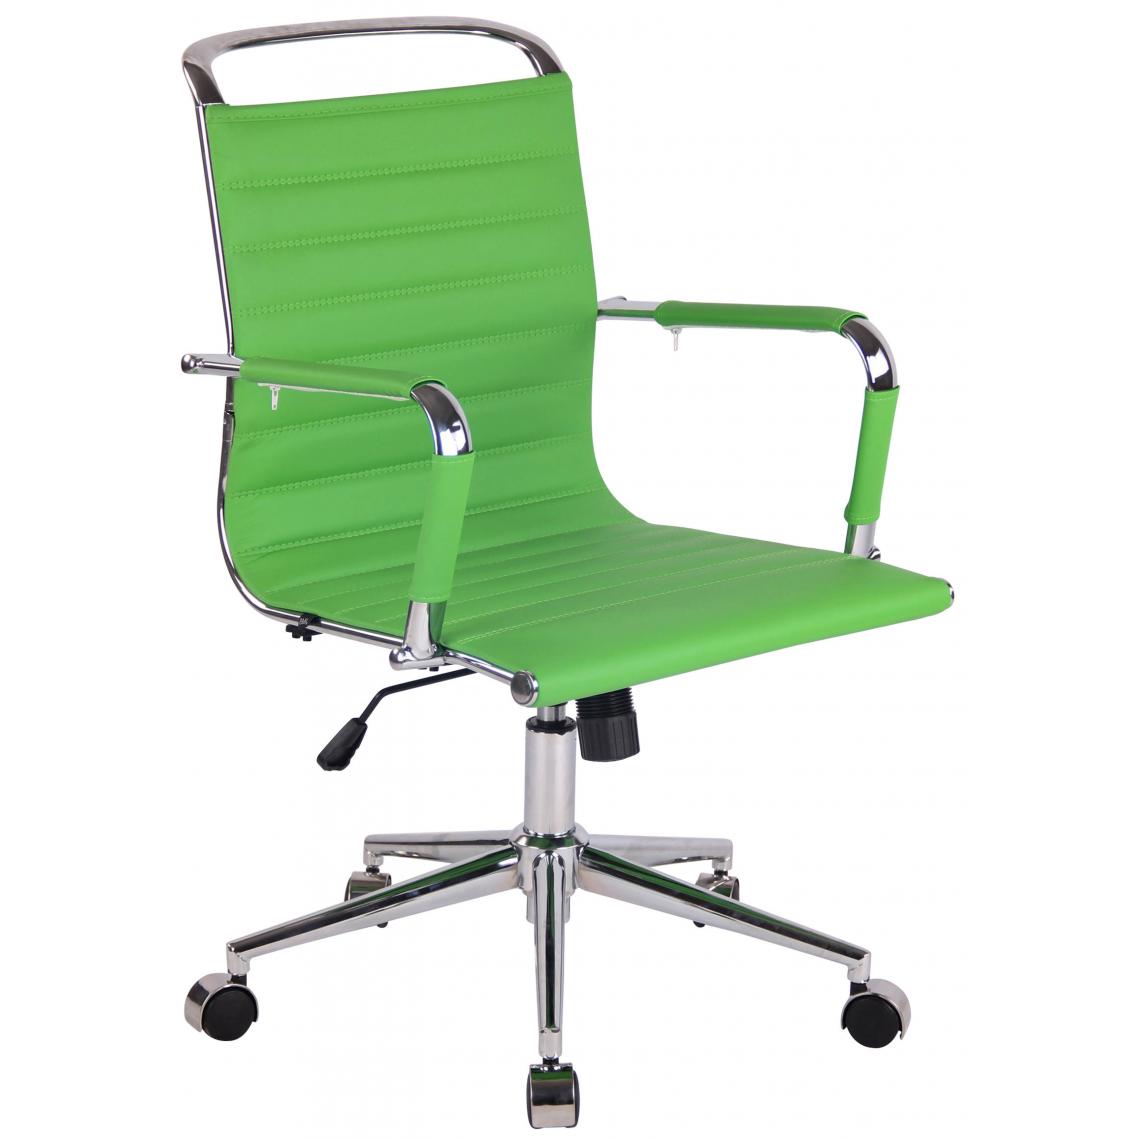 Icaverne - Contemporain Chaise de bureau en simili cuir selection Chi?in?u couleur vert - Chaises